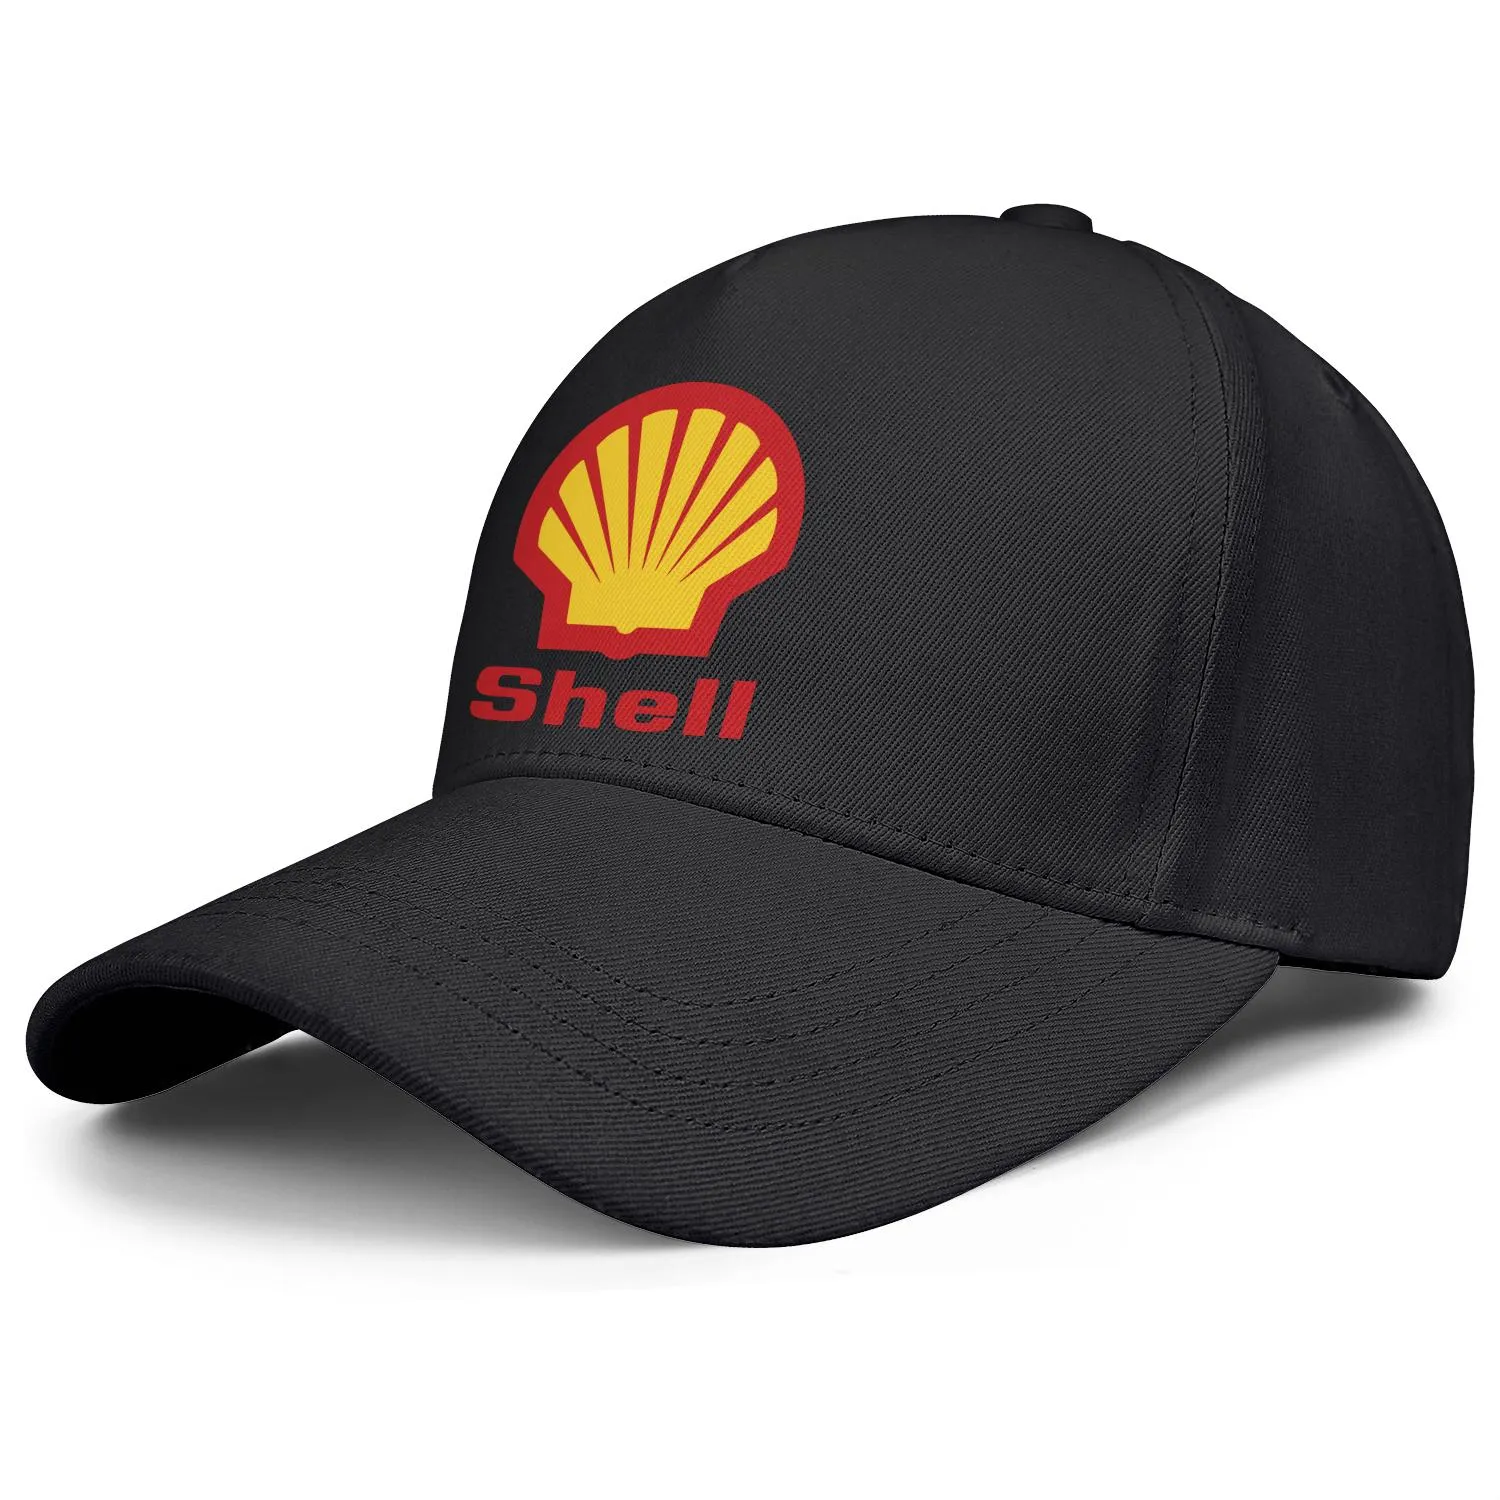 Shell benzine tankstation logo heren en dames verstelbare trucker cap gemonteerd vintage schattige baseballhoeden locator benzine symbo903213177806